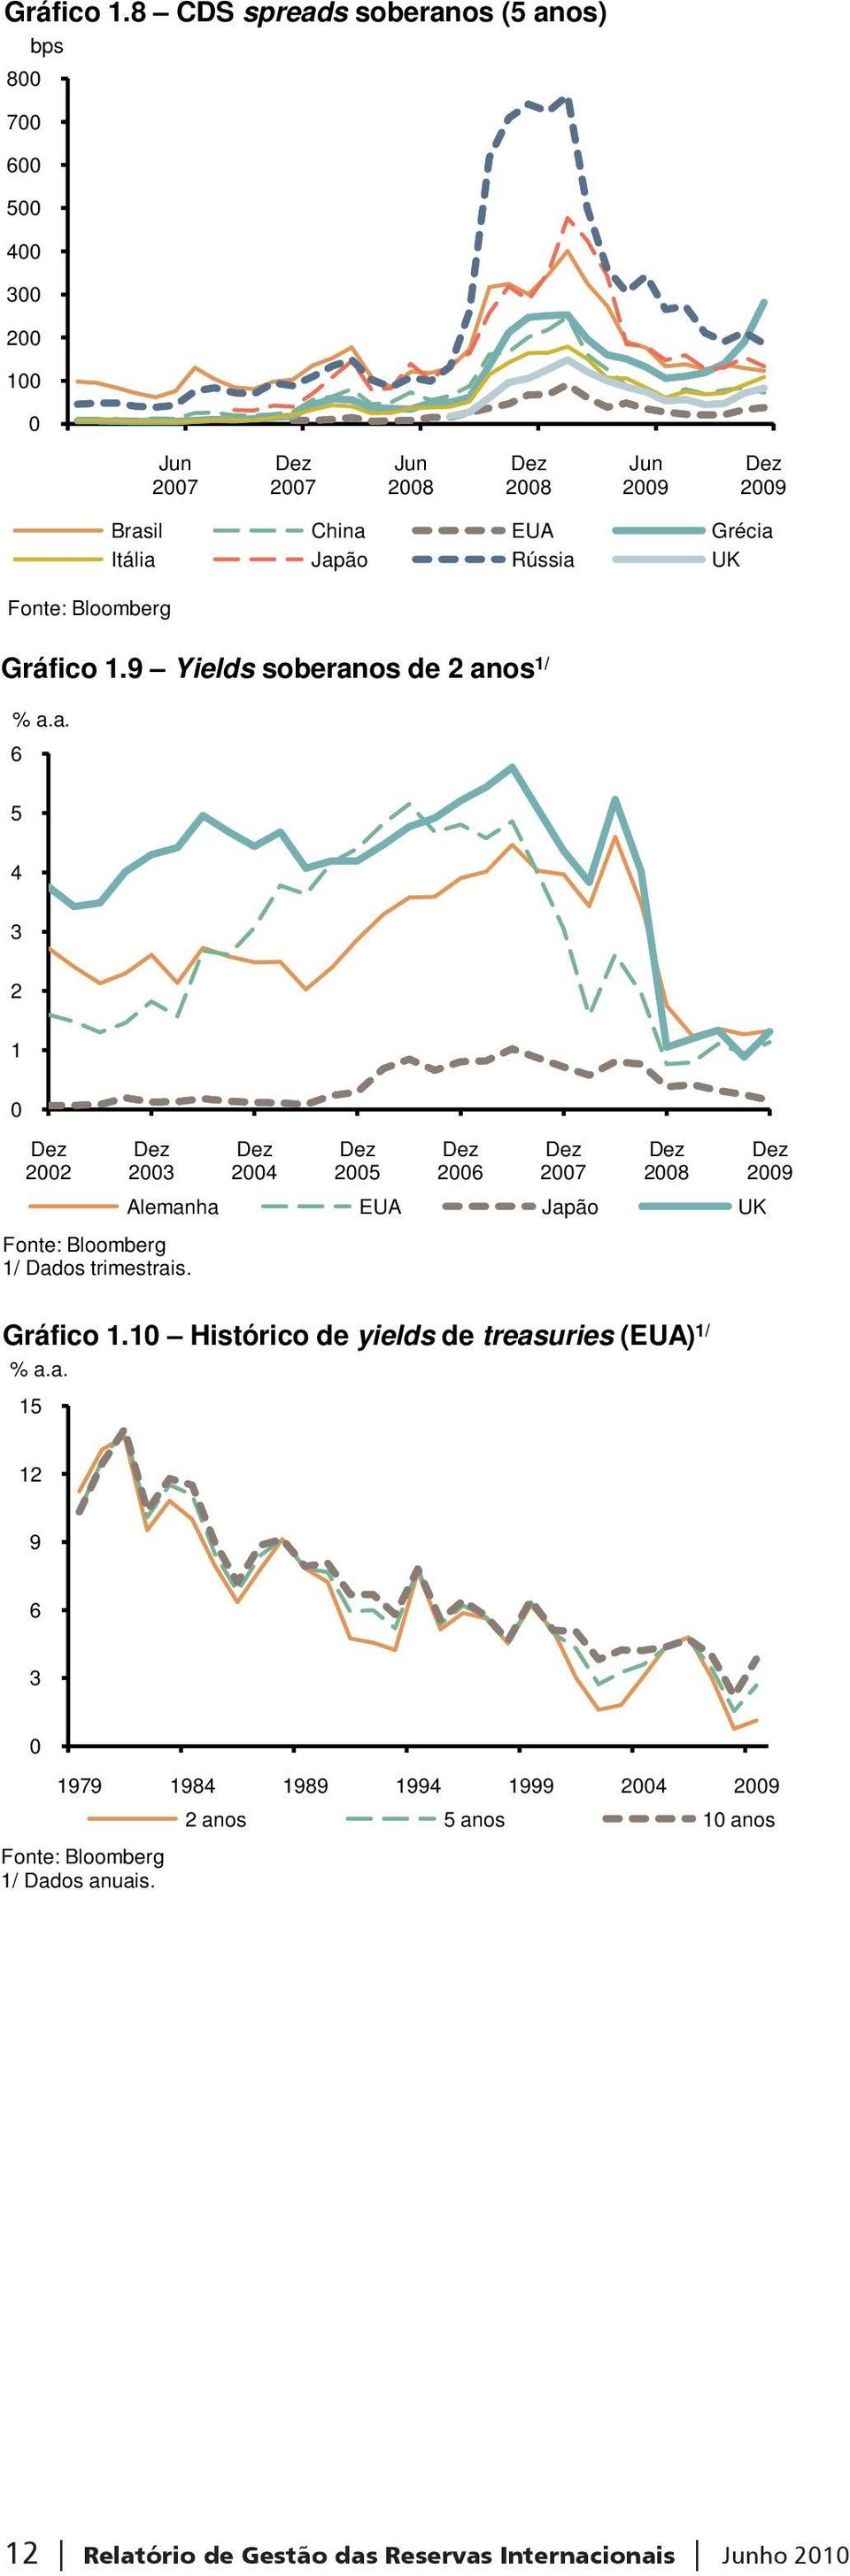 EUA Grécia Itália Japão Rússia UK 9 Yields soberanos de 2 anos 1/ % a.a. 6 5 4 3 2 1 0 2002 2003 Fonte: Bloomberg 1/ Dados trimestrais.